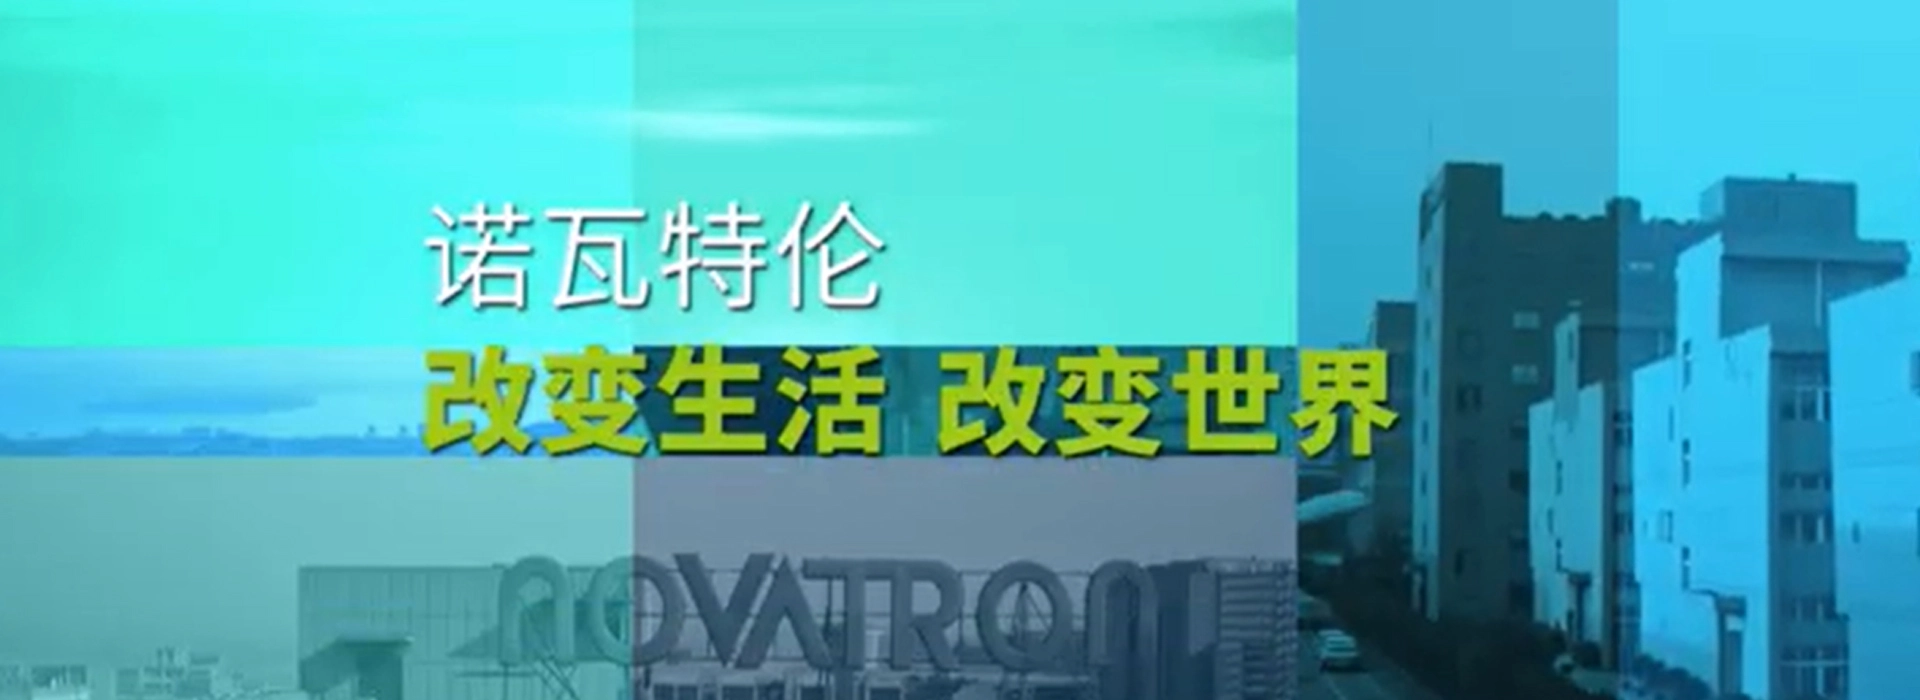 Профиль компании Novatron Видео-Китайский